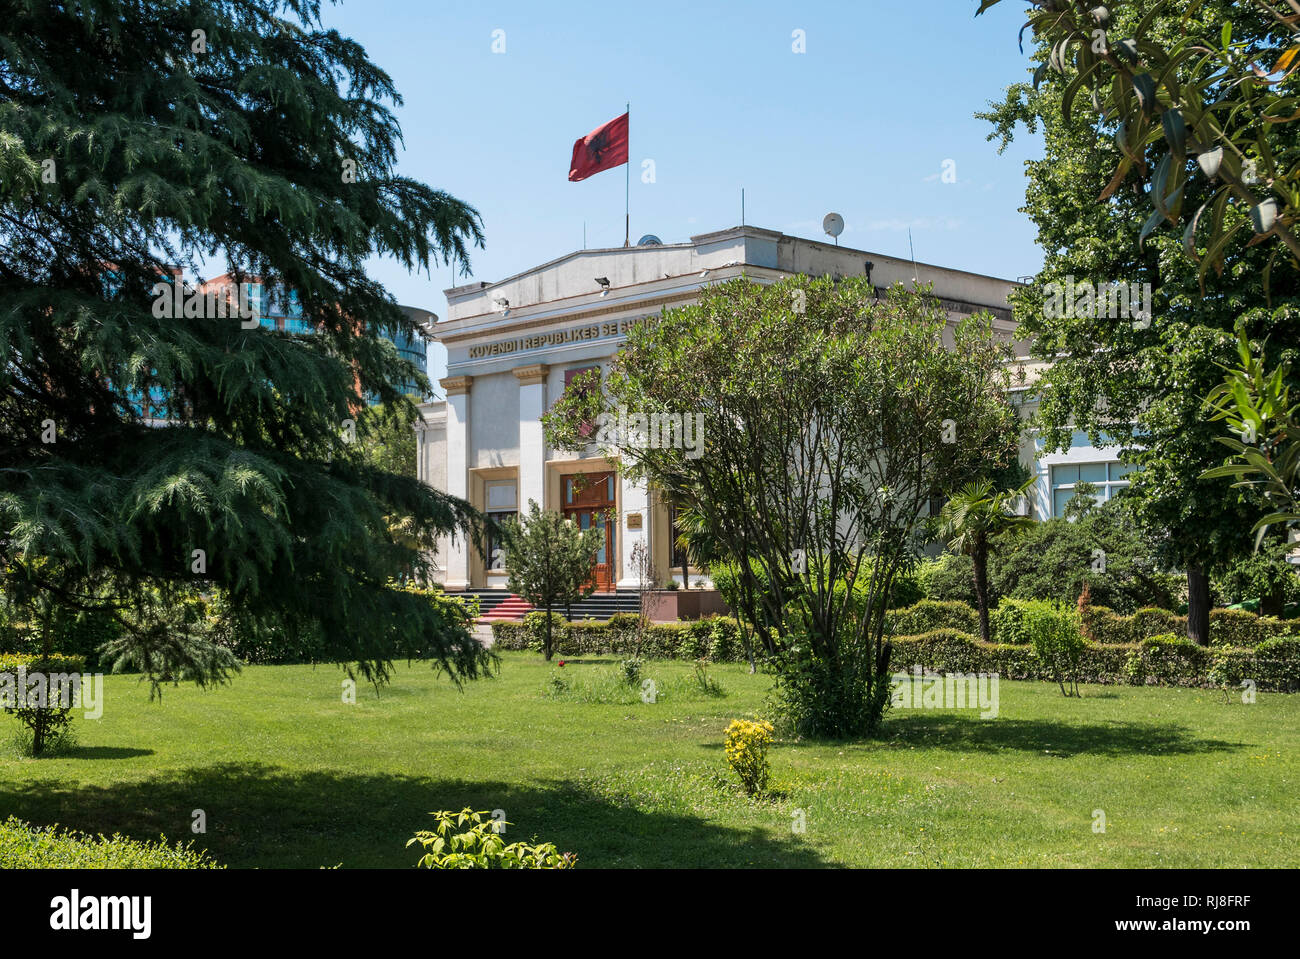 Albanien, Balkanhalbinsel, Südosteuropa, Republik Albanien, Tirana, Hauptstadt Albanisches Parlament Foto de stock